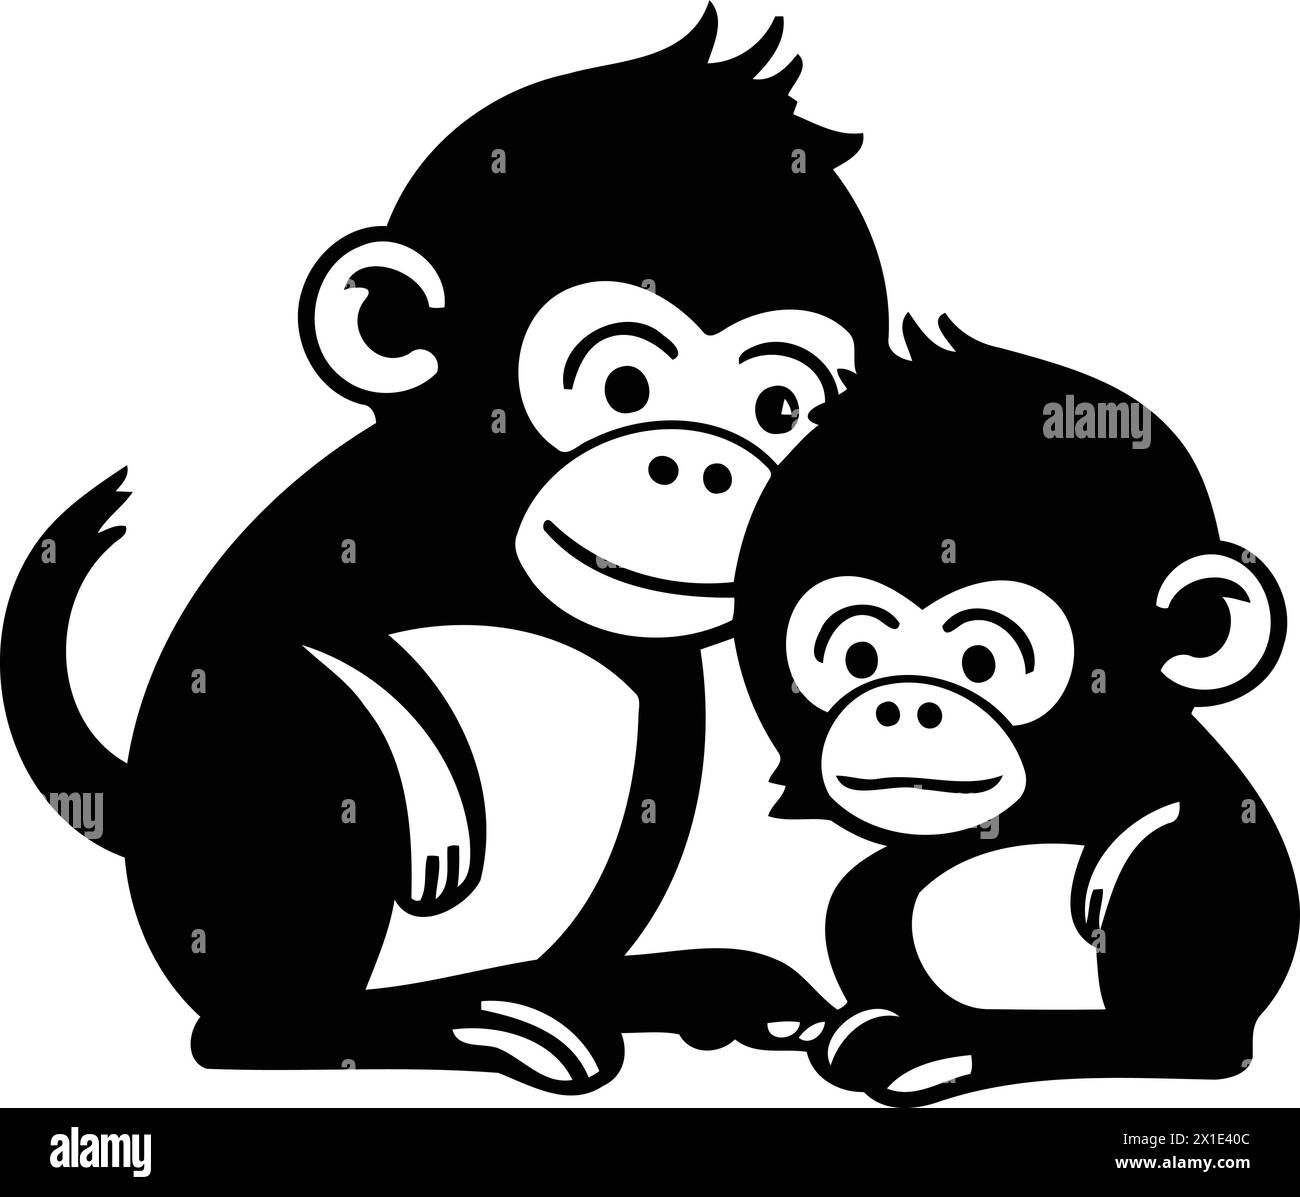 Monkey family cartoon vector illustration. Cute monkey family icon ...